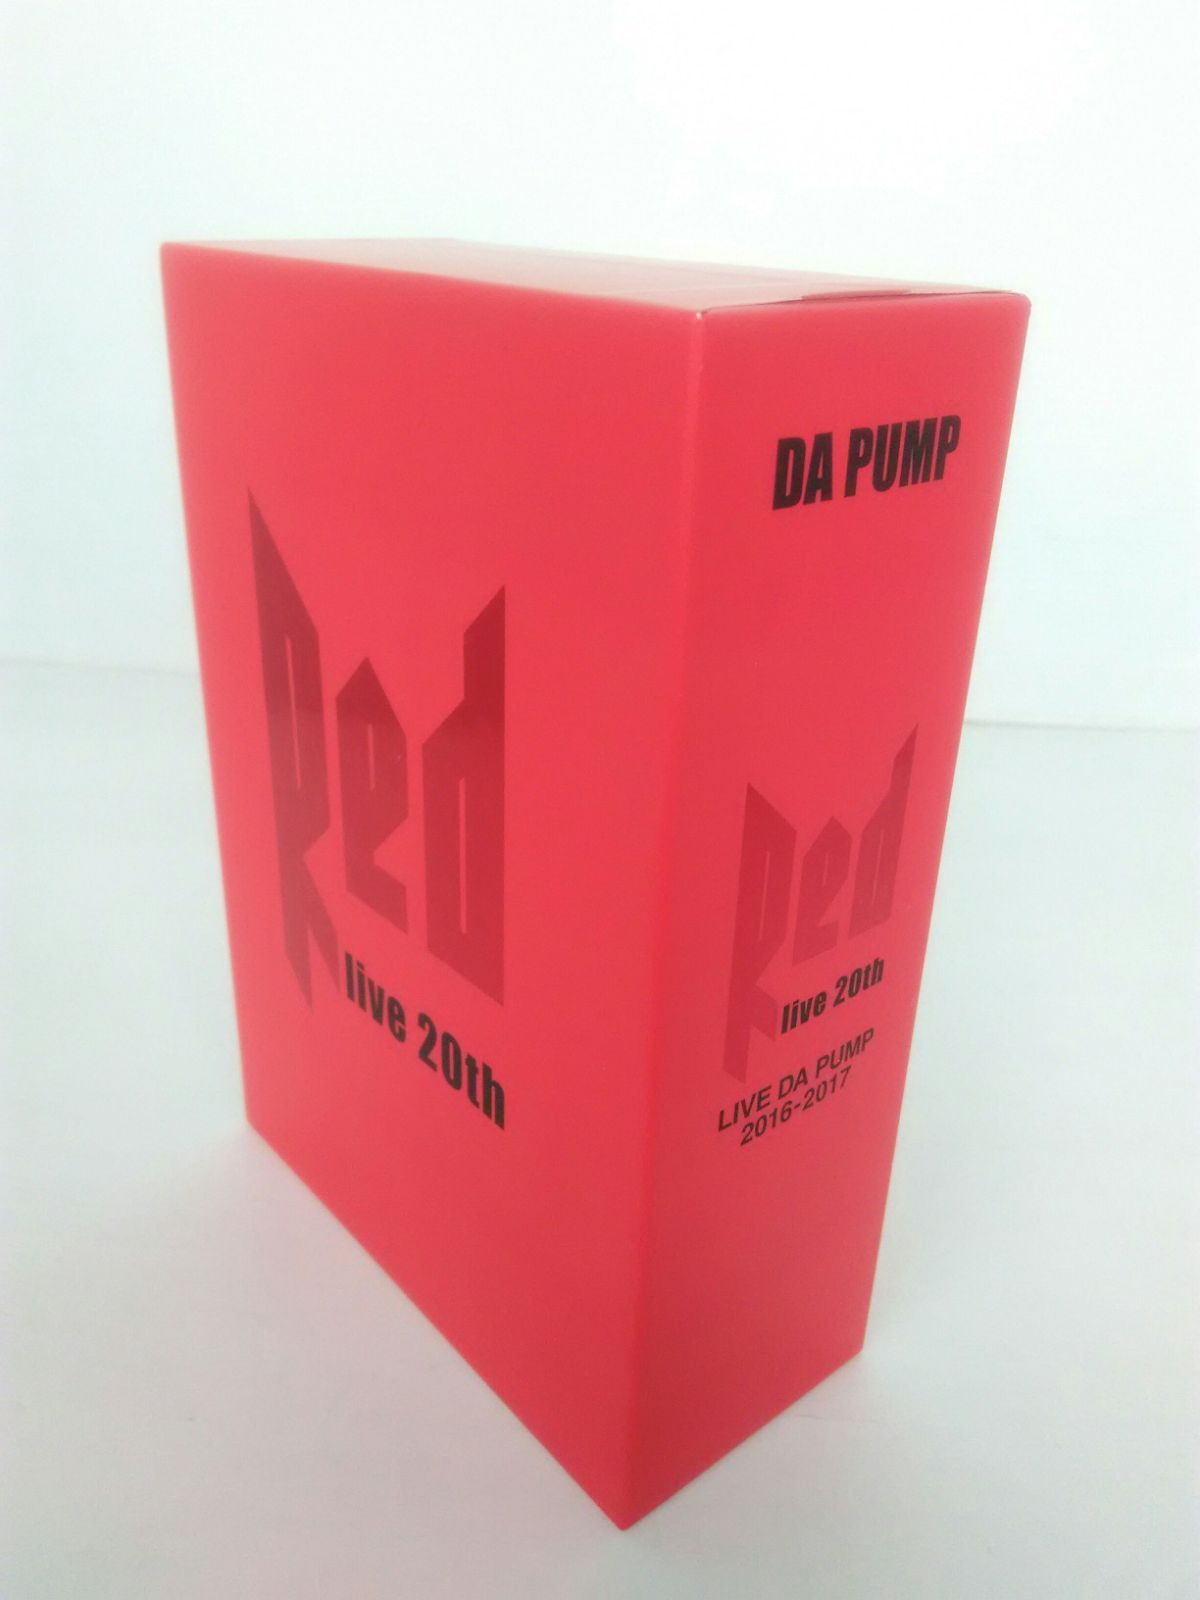 初回生産限定盤 DA PUMP ダパンプ RED LIVE 20th DVD - メルカリ